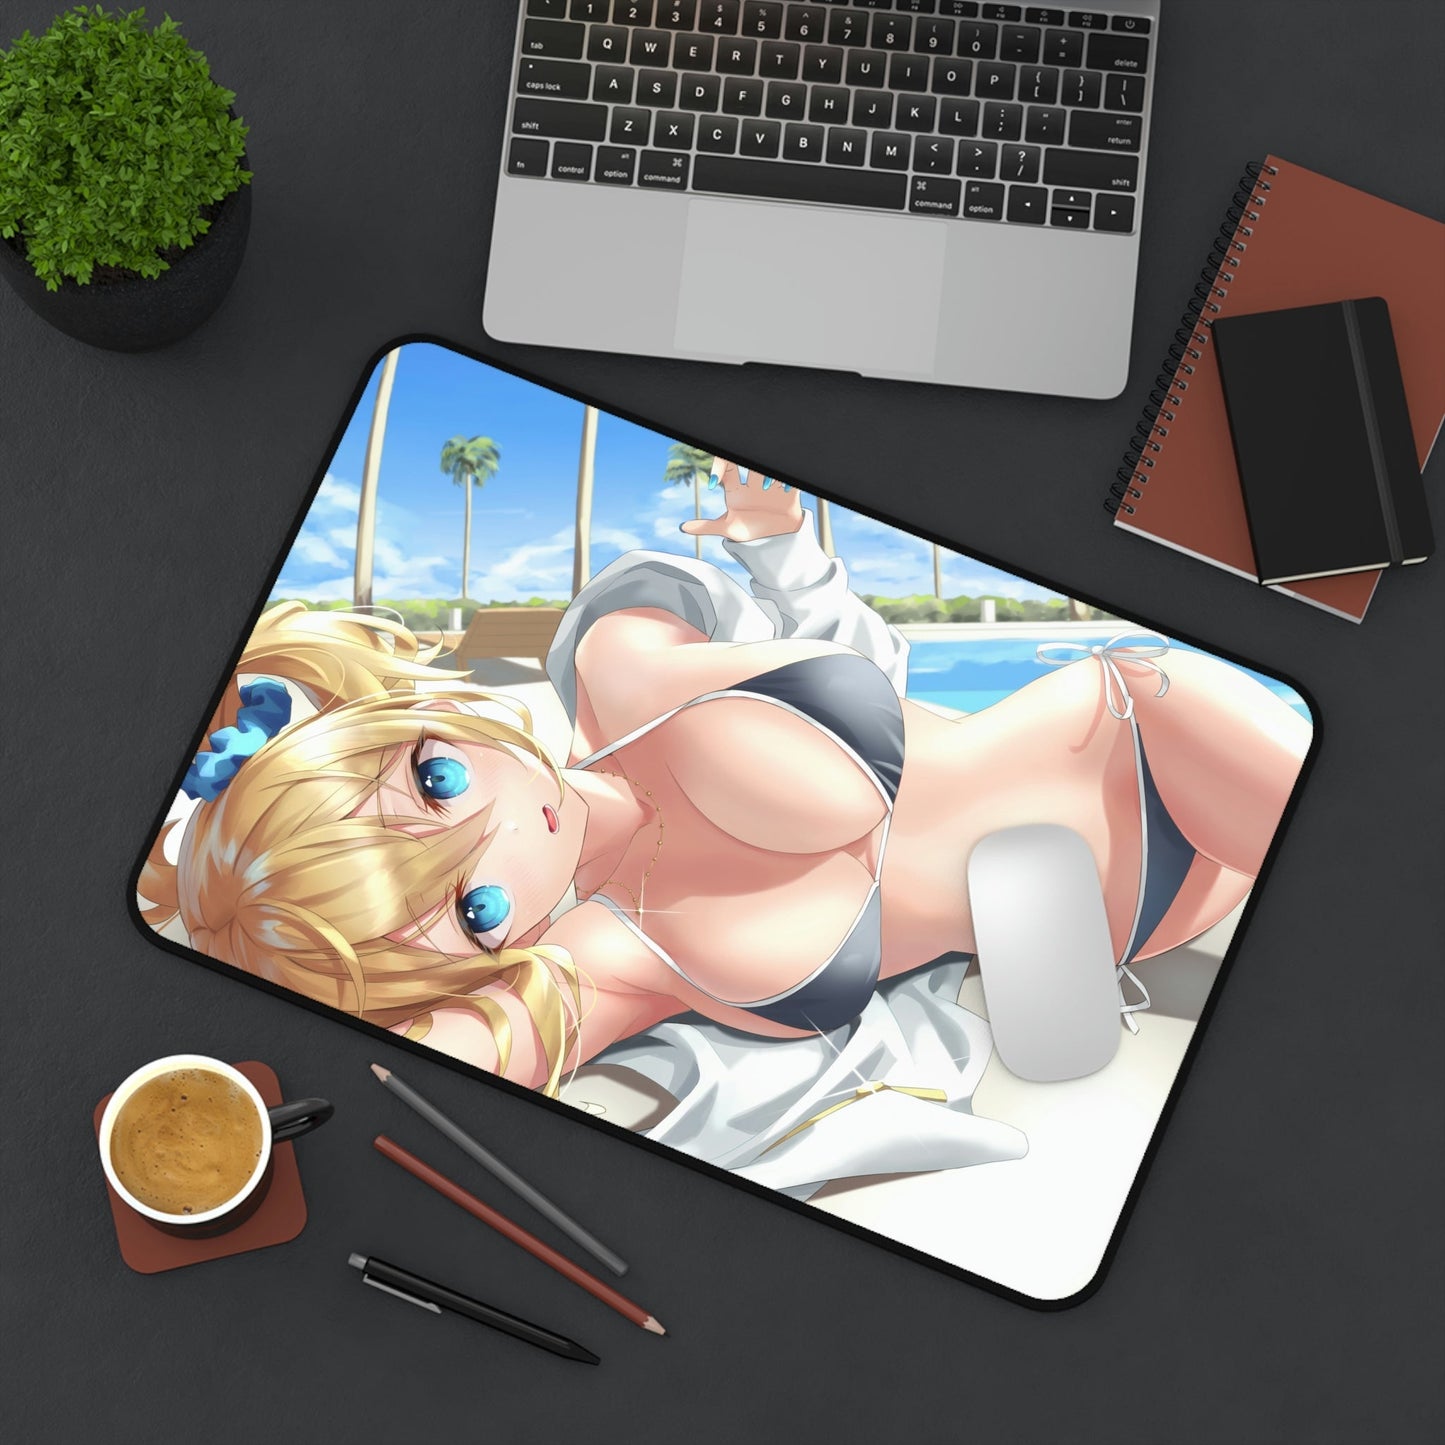 Kaguya Sama Sexy Mousepad - Ai Hayasaka Bikini Desk Mat - Adult Playmat